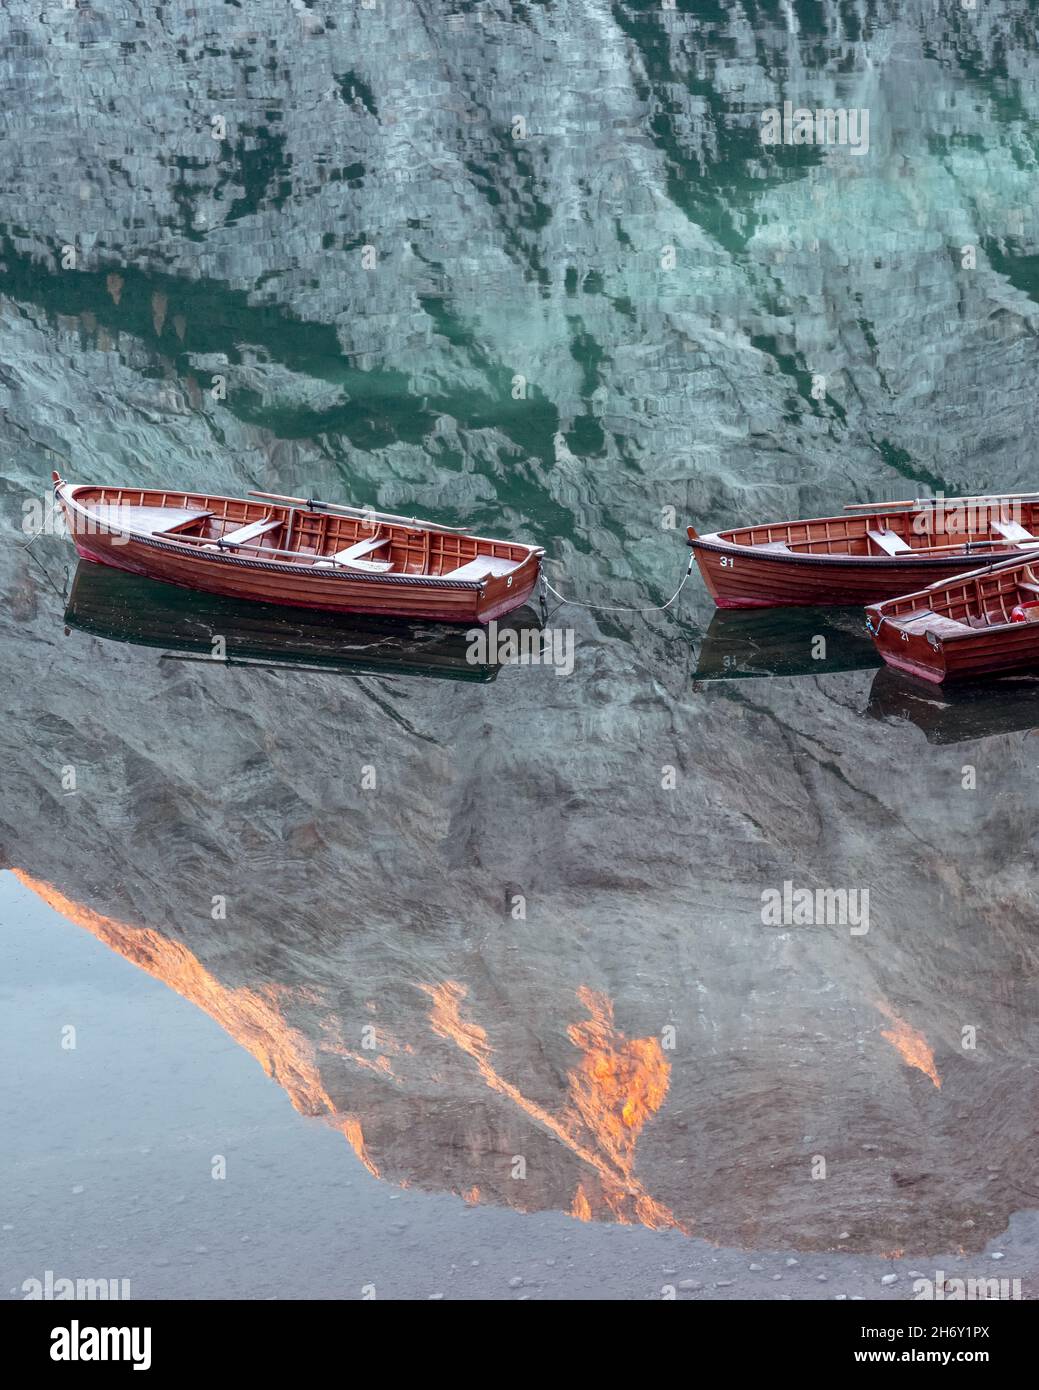 Malerische Landschaft mit dem berühmten Pragser See in den herbstlichen Dolomitenbergen. Holzboote im klaren Wasser des Pragser Sees, Dolomiten-Alpen, Italien. Glühender Seekofel Berggipfel in Wasserspiegelung Stockfoto